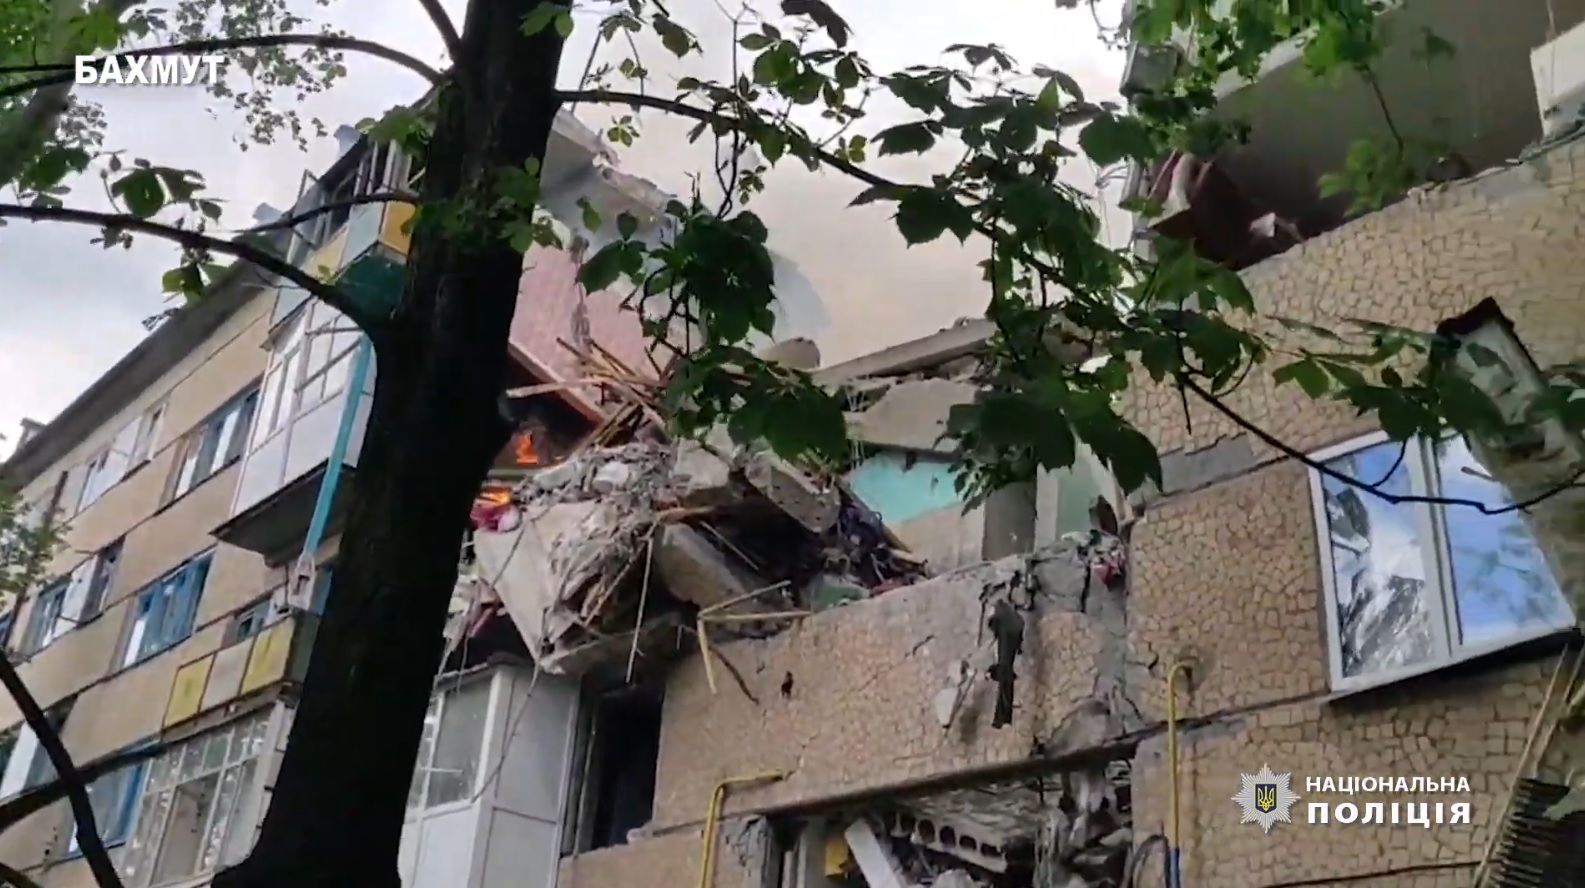 Еще один удар в Бахмуте: оккупанты разрушили многоэтажку, погибла женщина. Среди раненых ребенок 3